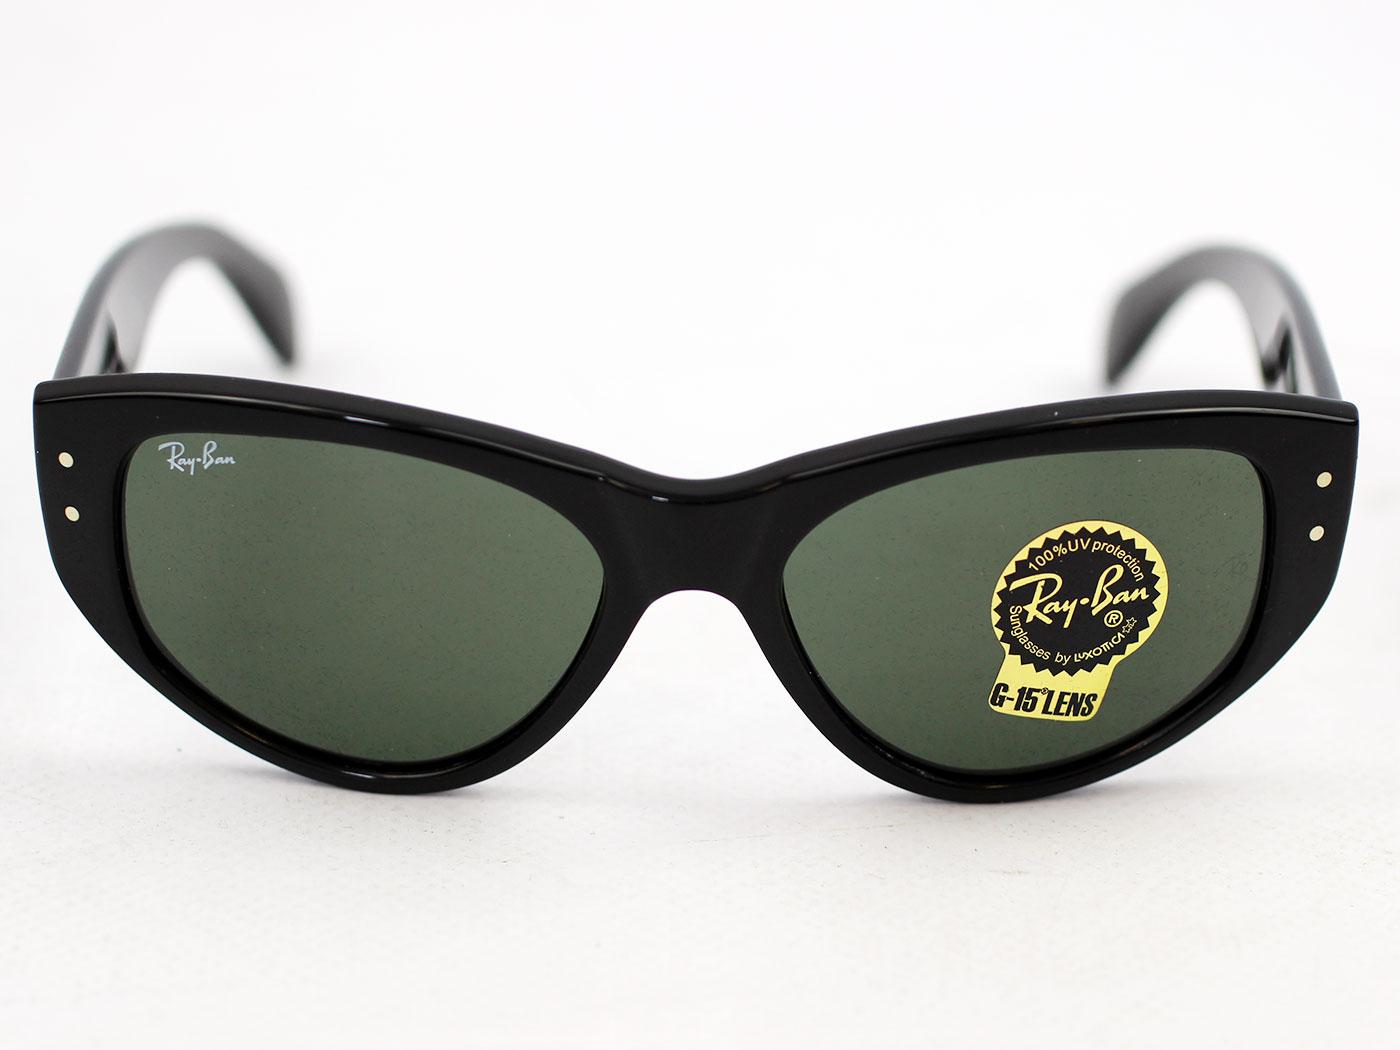 Ray Ban Vagabond Sunglasses In Black Retro 50s Sunglasses